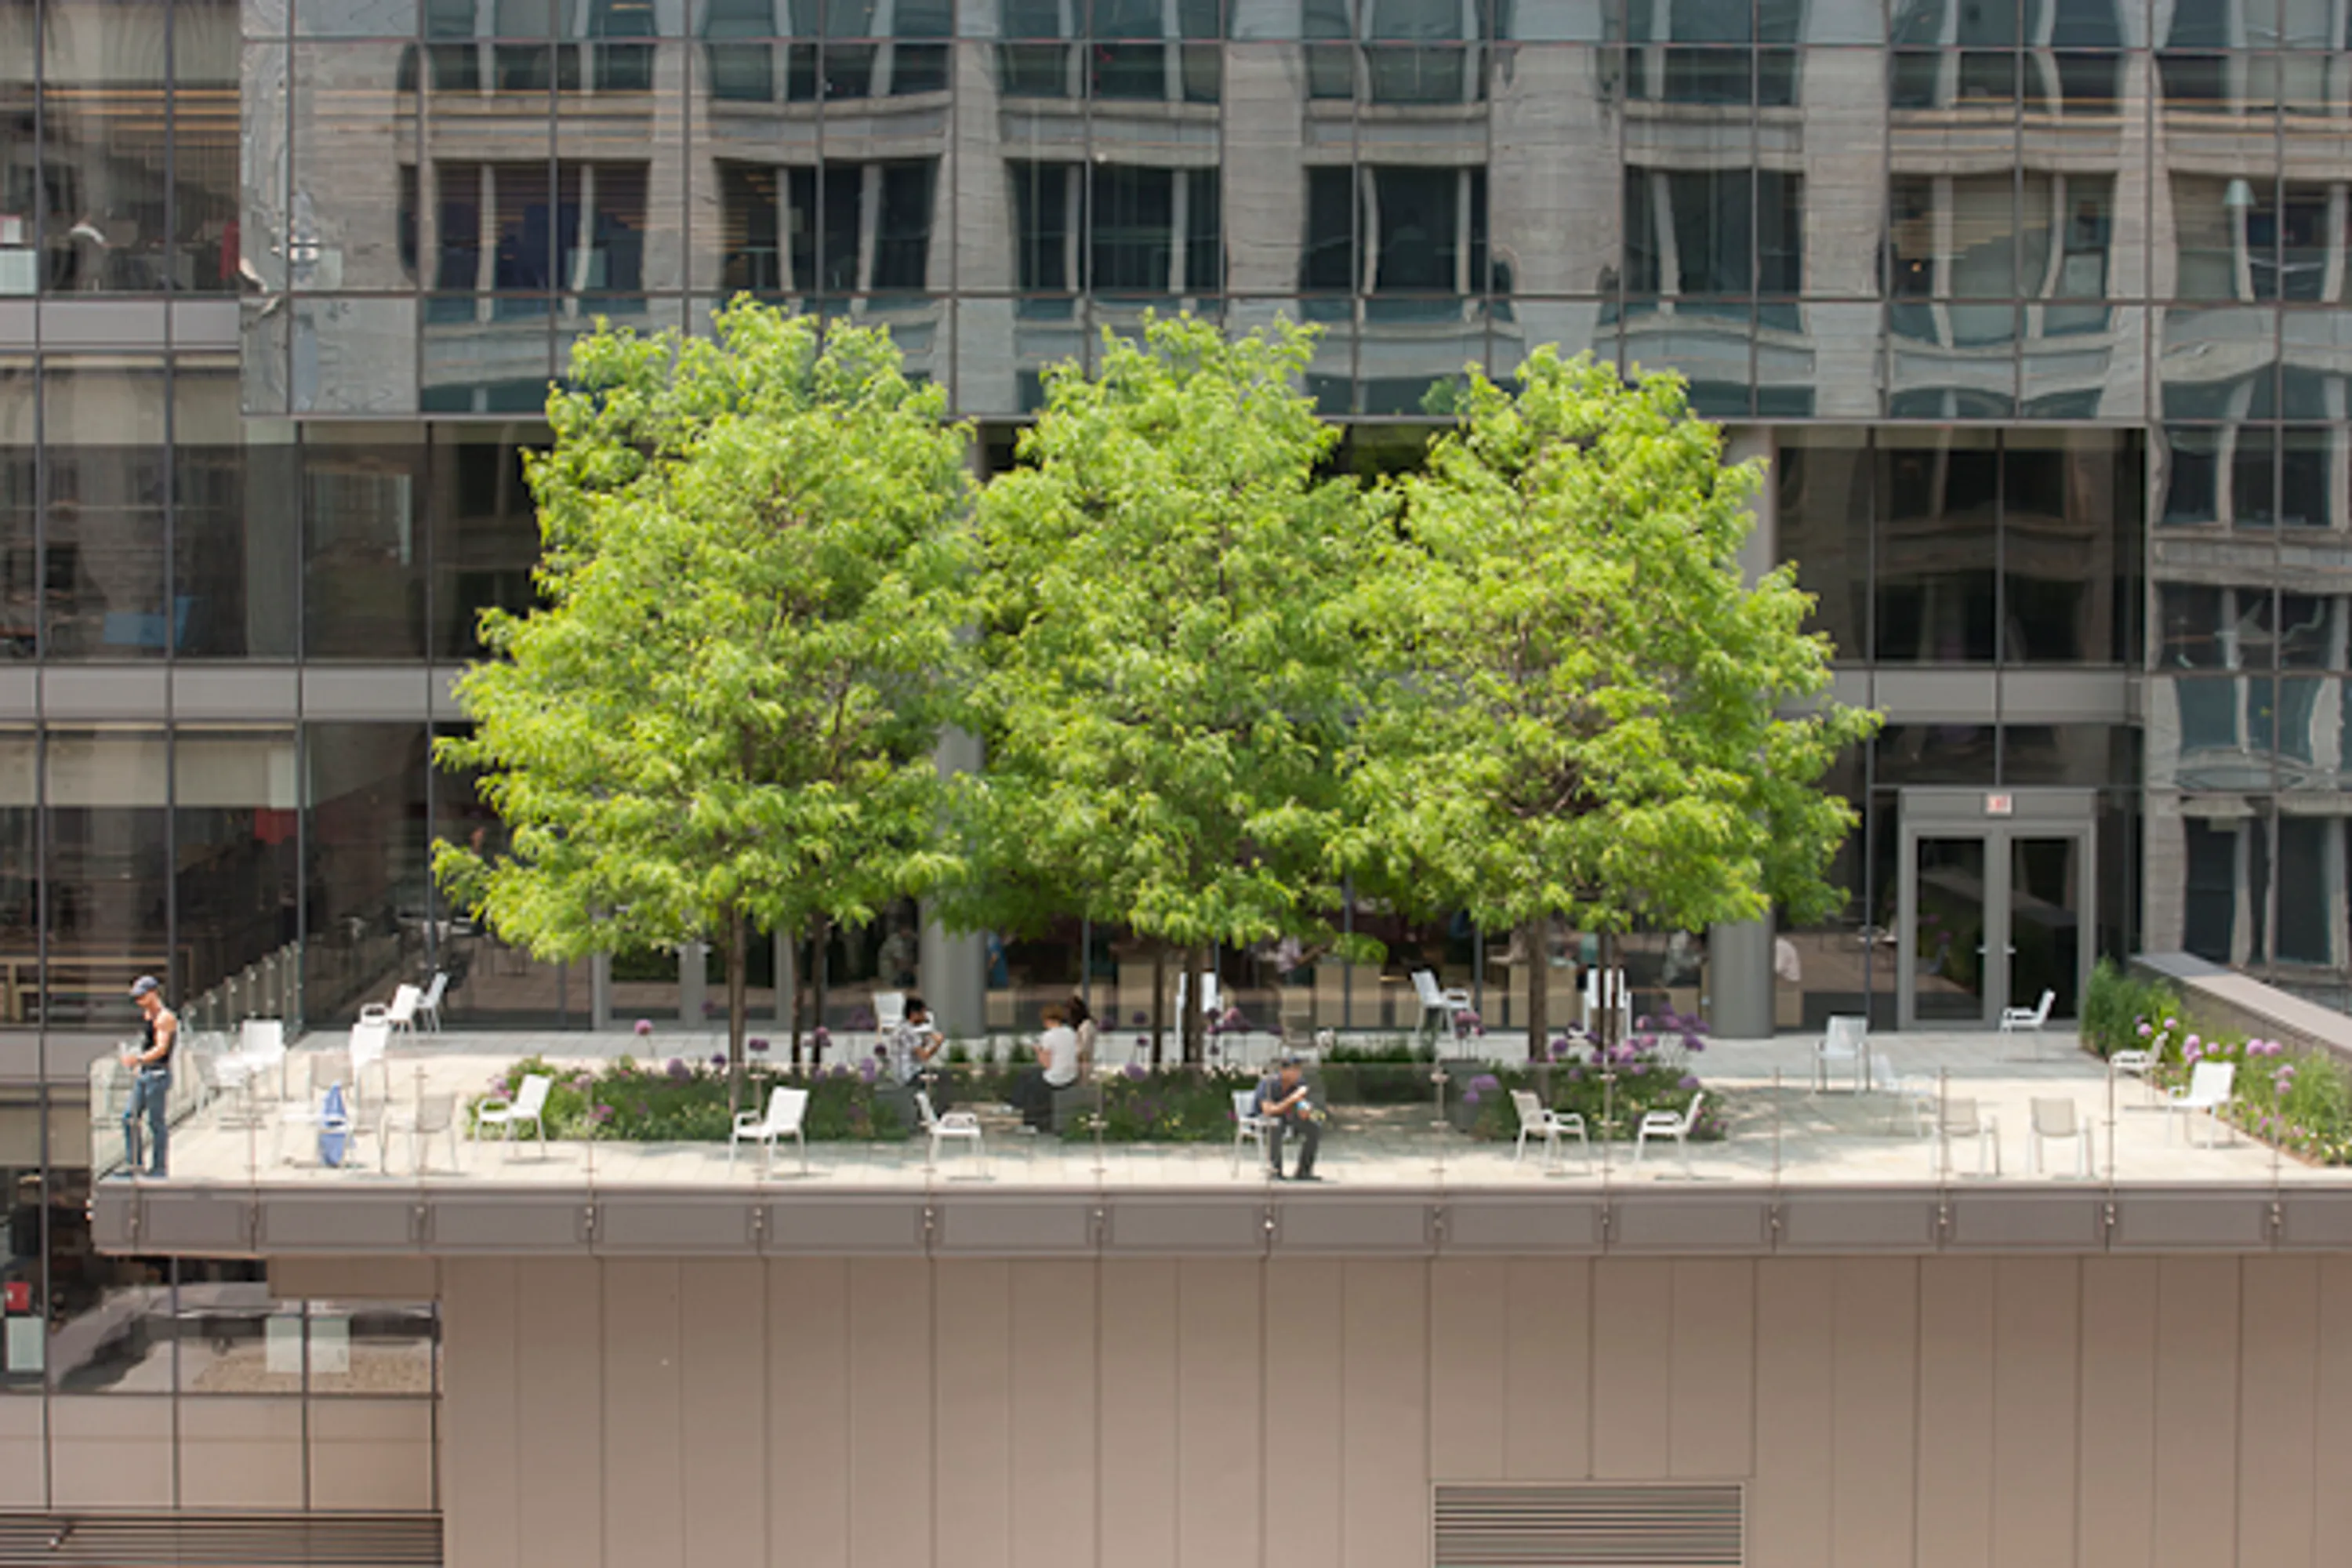 1 morningstar rooftop trees notes on landscape design blog hoerrschaudt